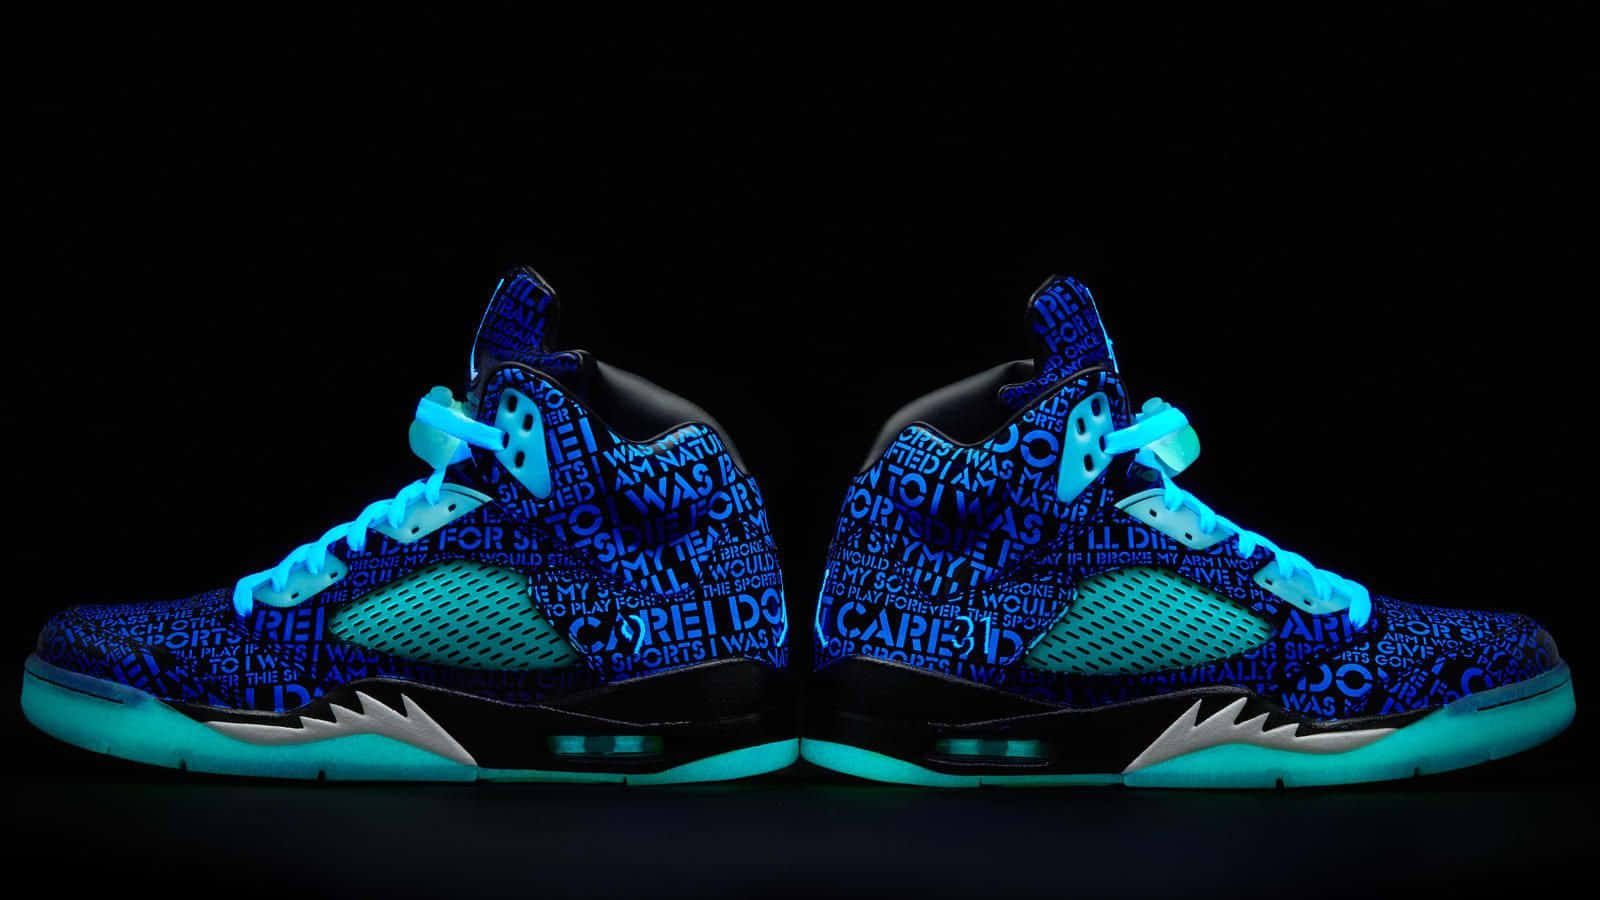 Caption: Blue Jordan Sneakers in Style Wallpaper